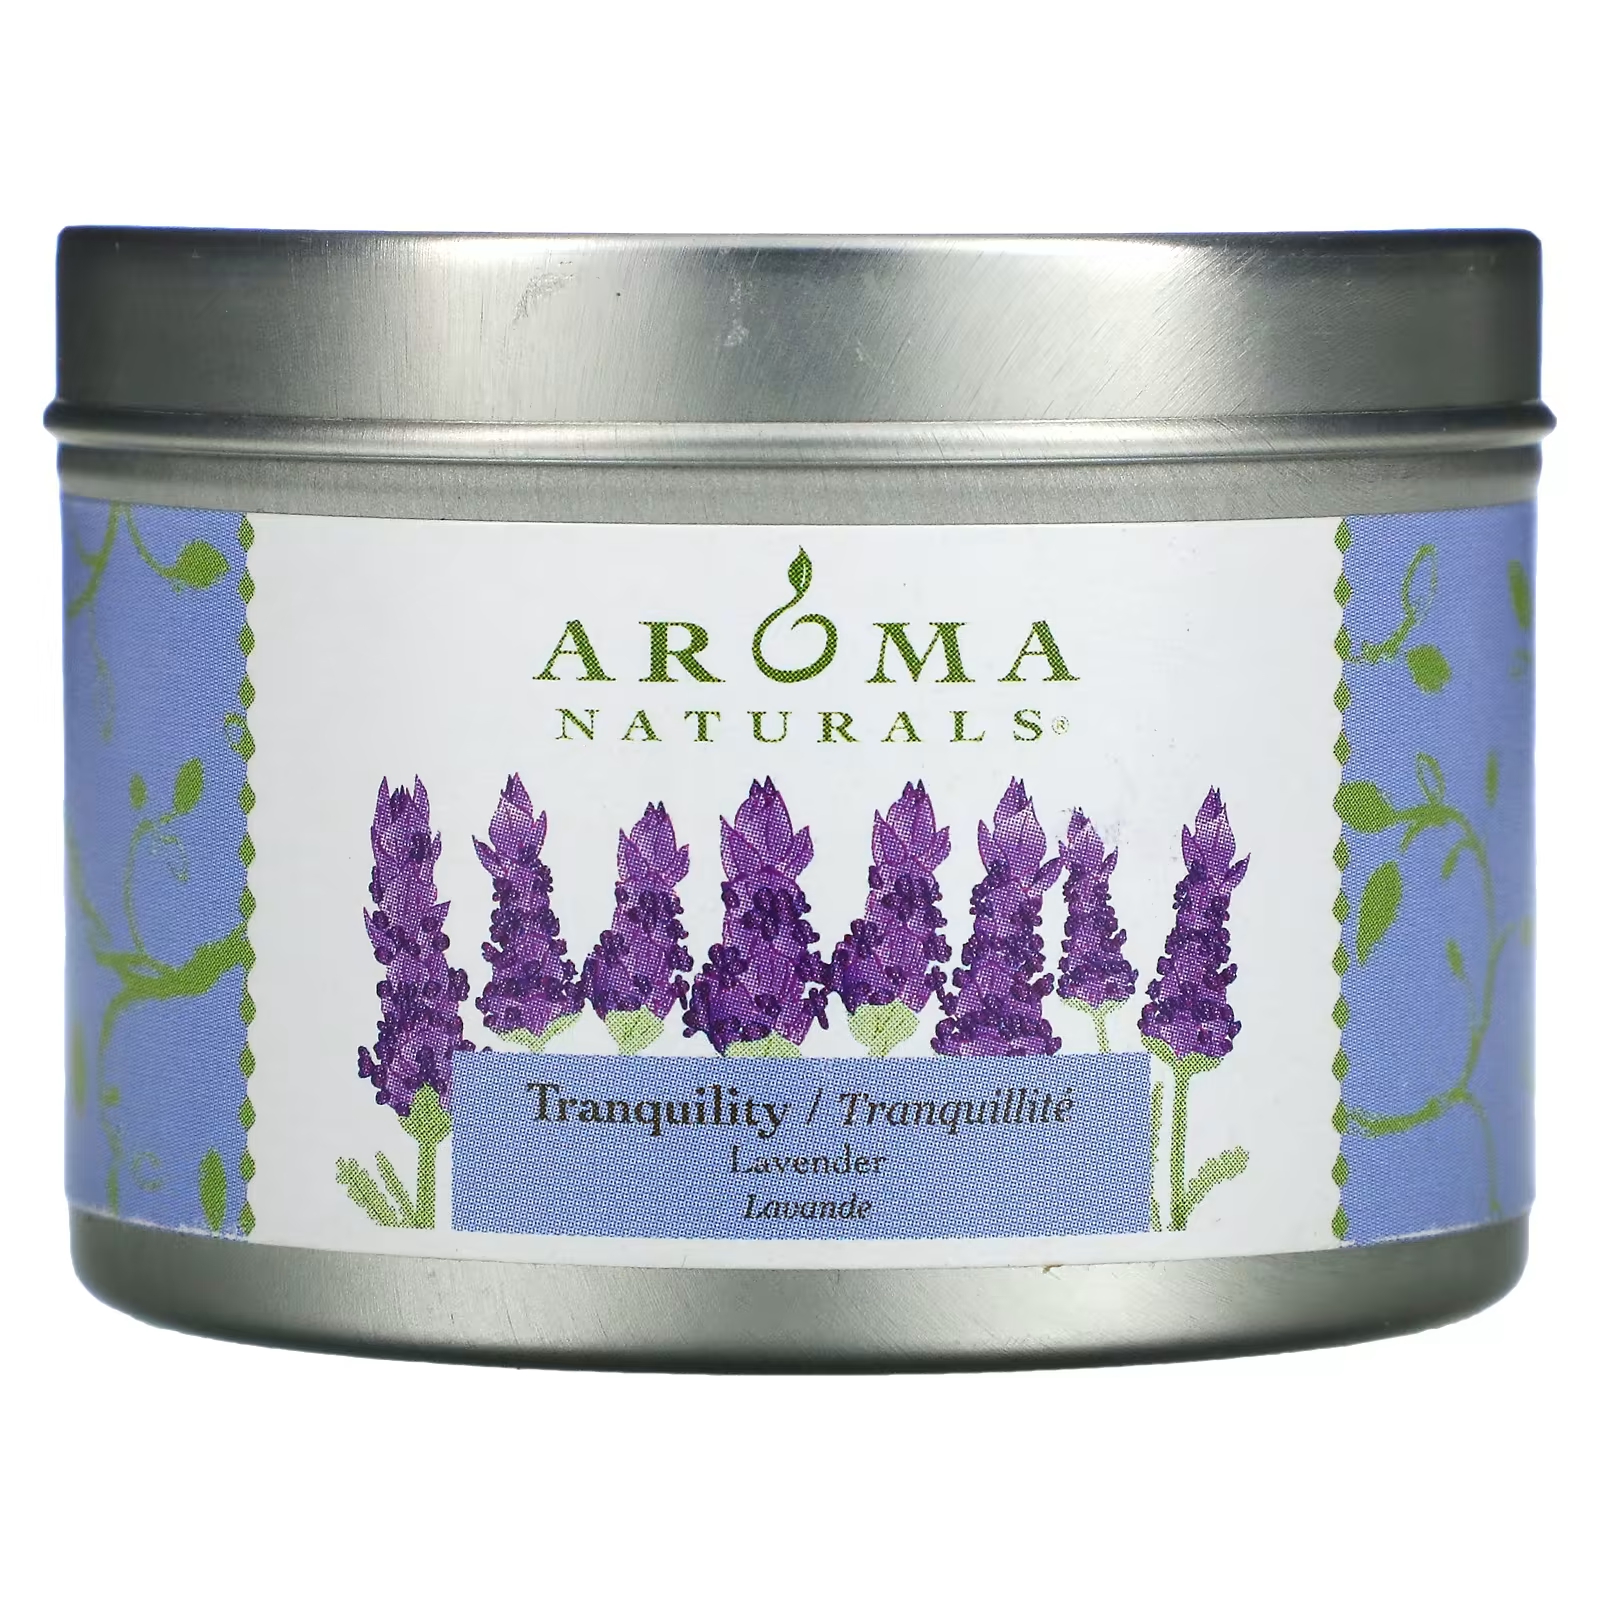 Ароматическая свеча Aroma Naturals Soy VegePure Tranquility с ароматом лаванды, 79,38 г